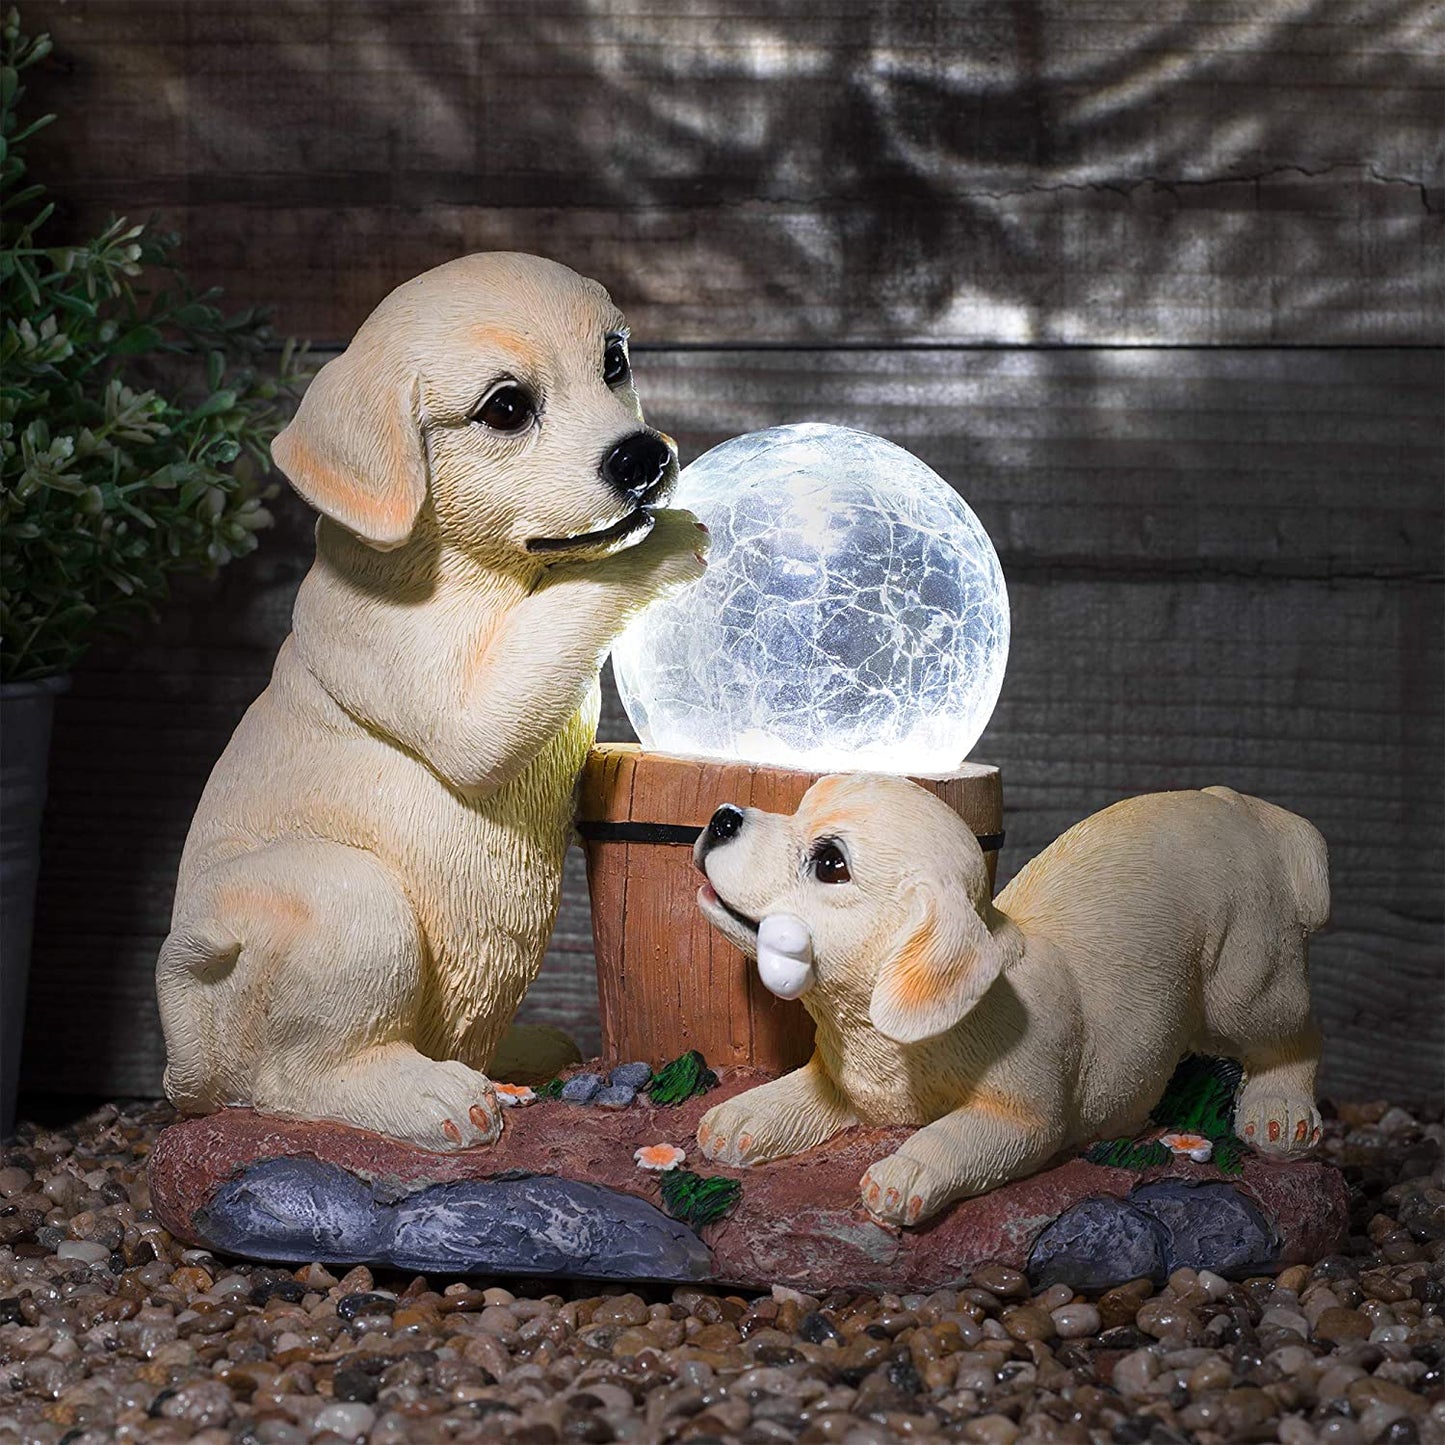 Solar Labrador Dogs Garden Ornaments | Solar Ornaments | Solar Powered Crackle Ball Light | Garden Decorations Solar Animal | Labrador Ornaments Garden Décor